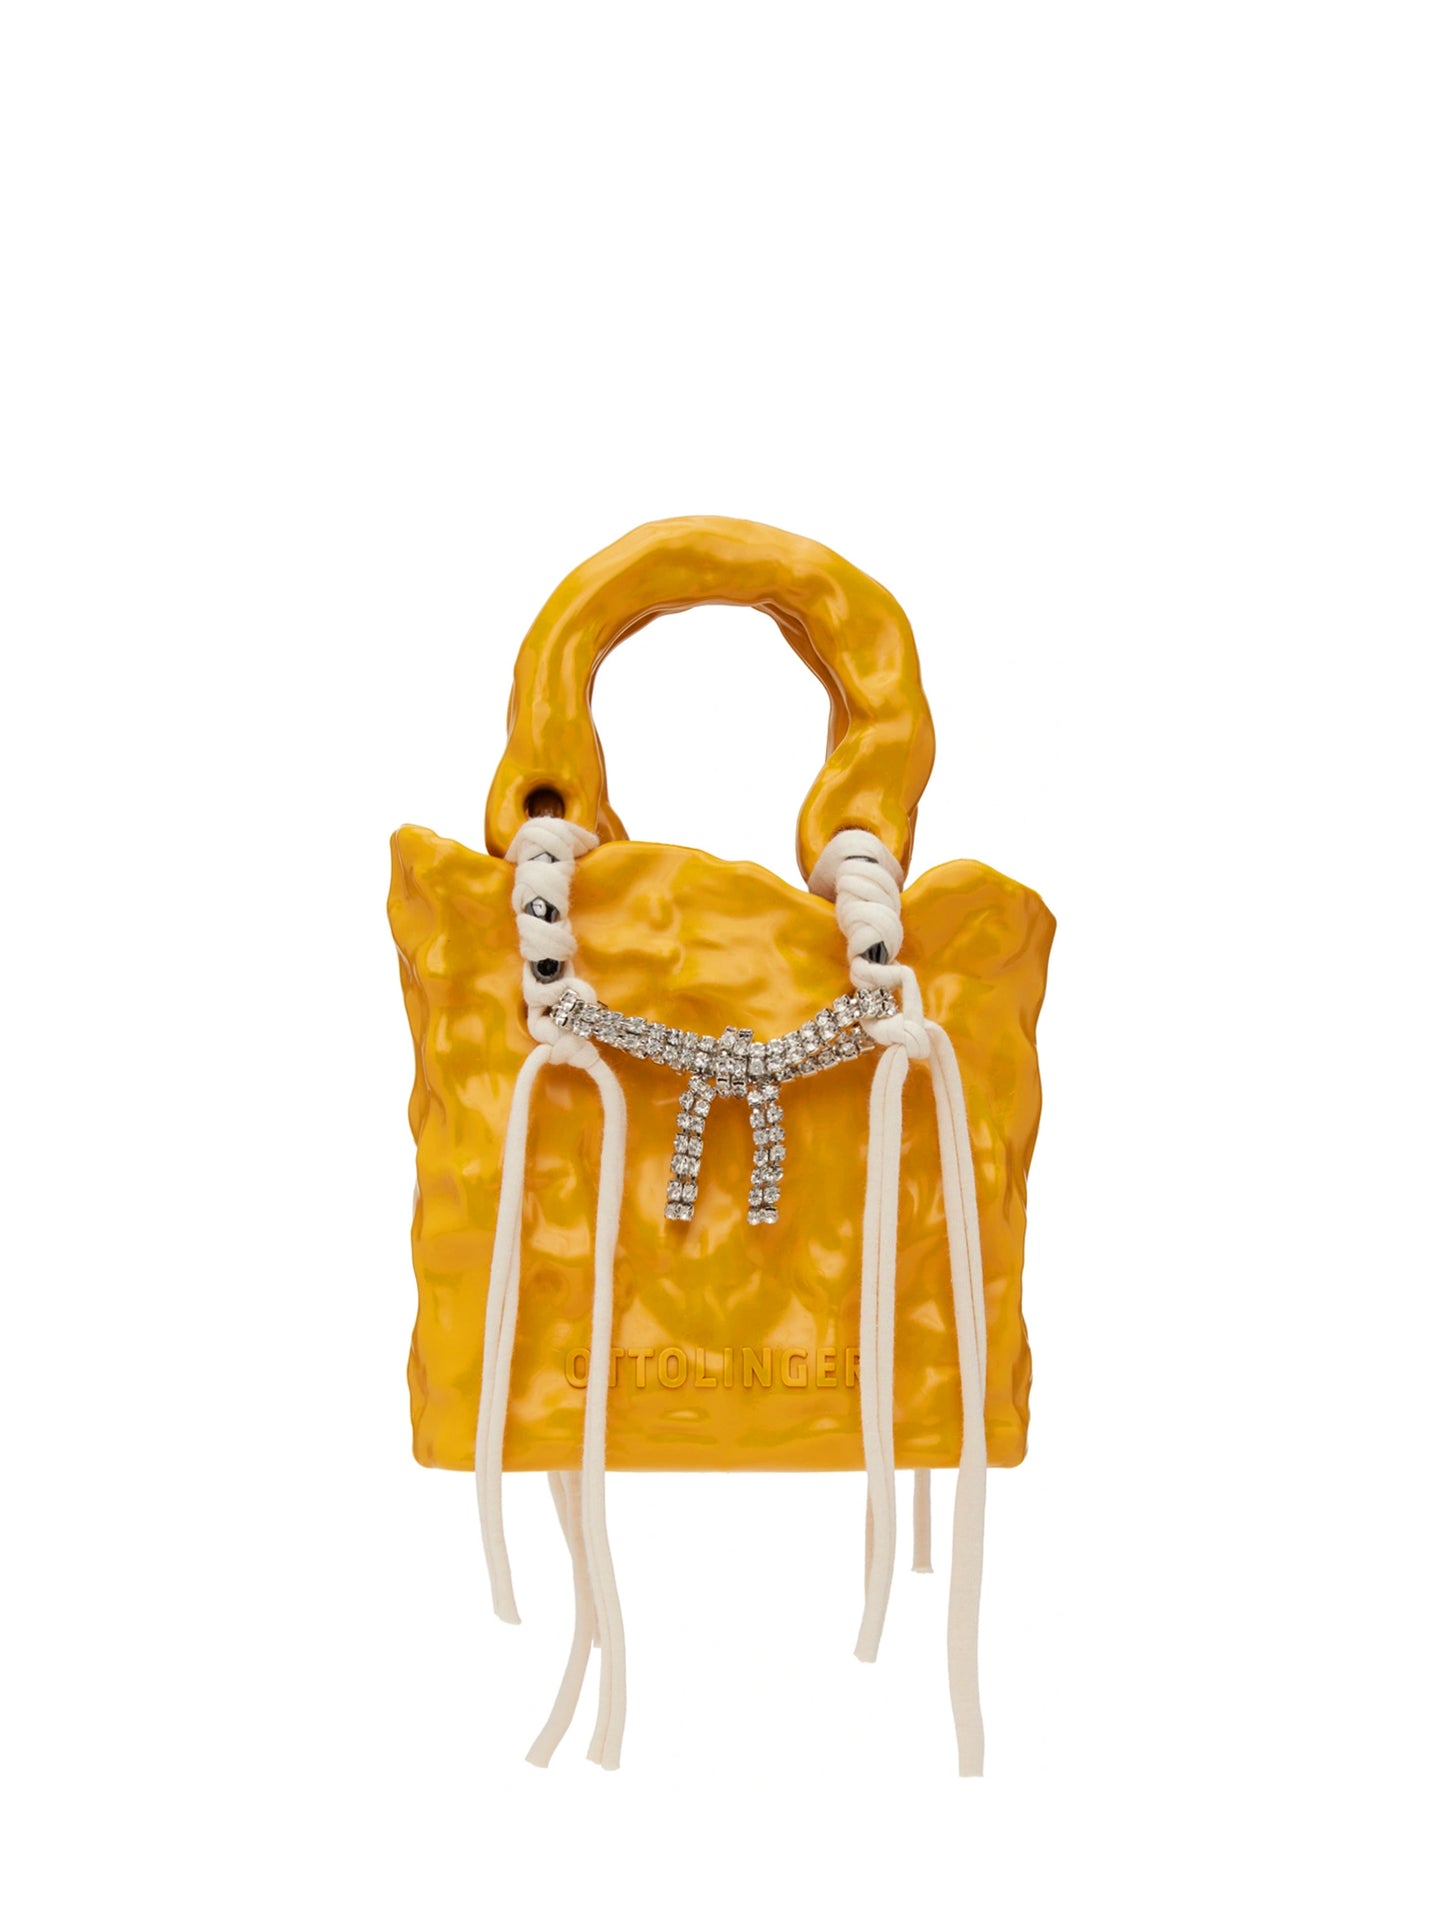 Ottolinger Signature Ceramic Yellow Bag